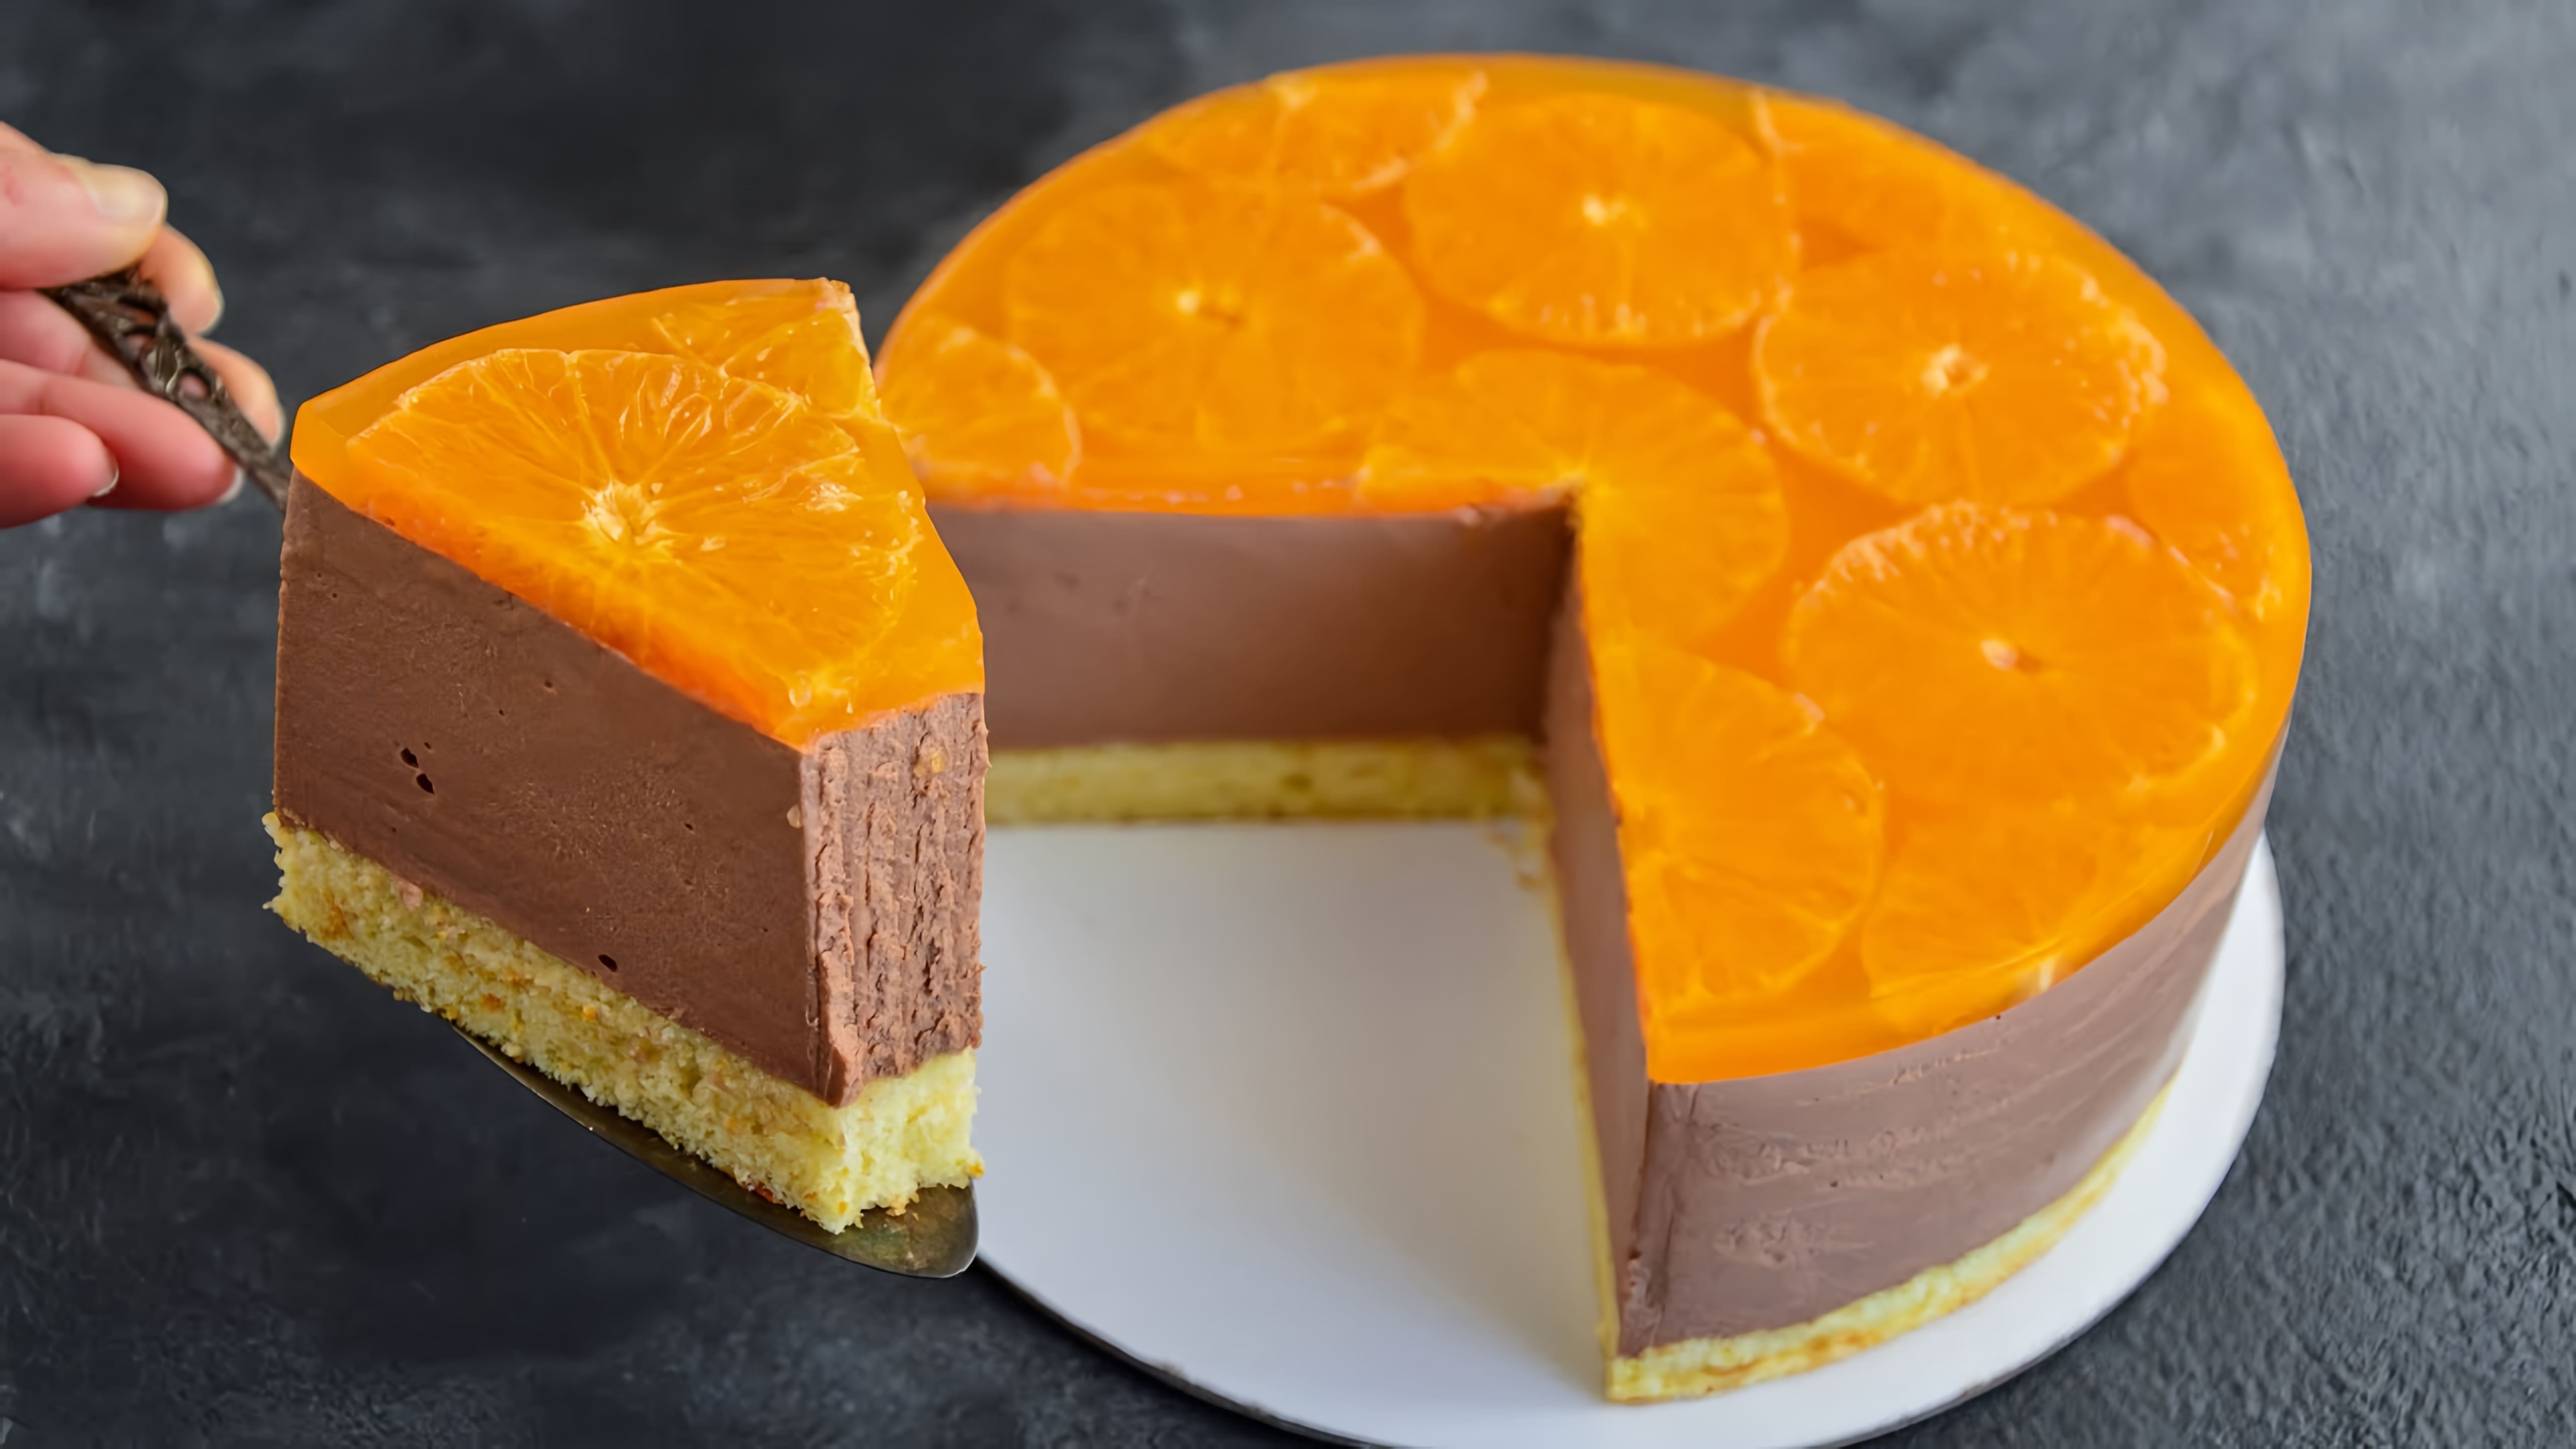 В этом видео демонстрируется процесс приготовления шоколадного апельсинового торта с бархатной текстурой